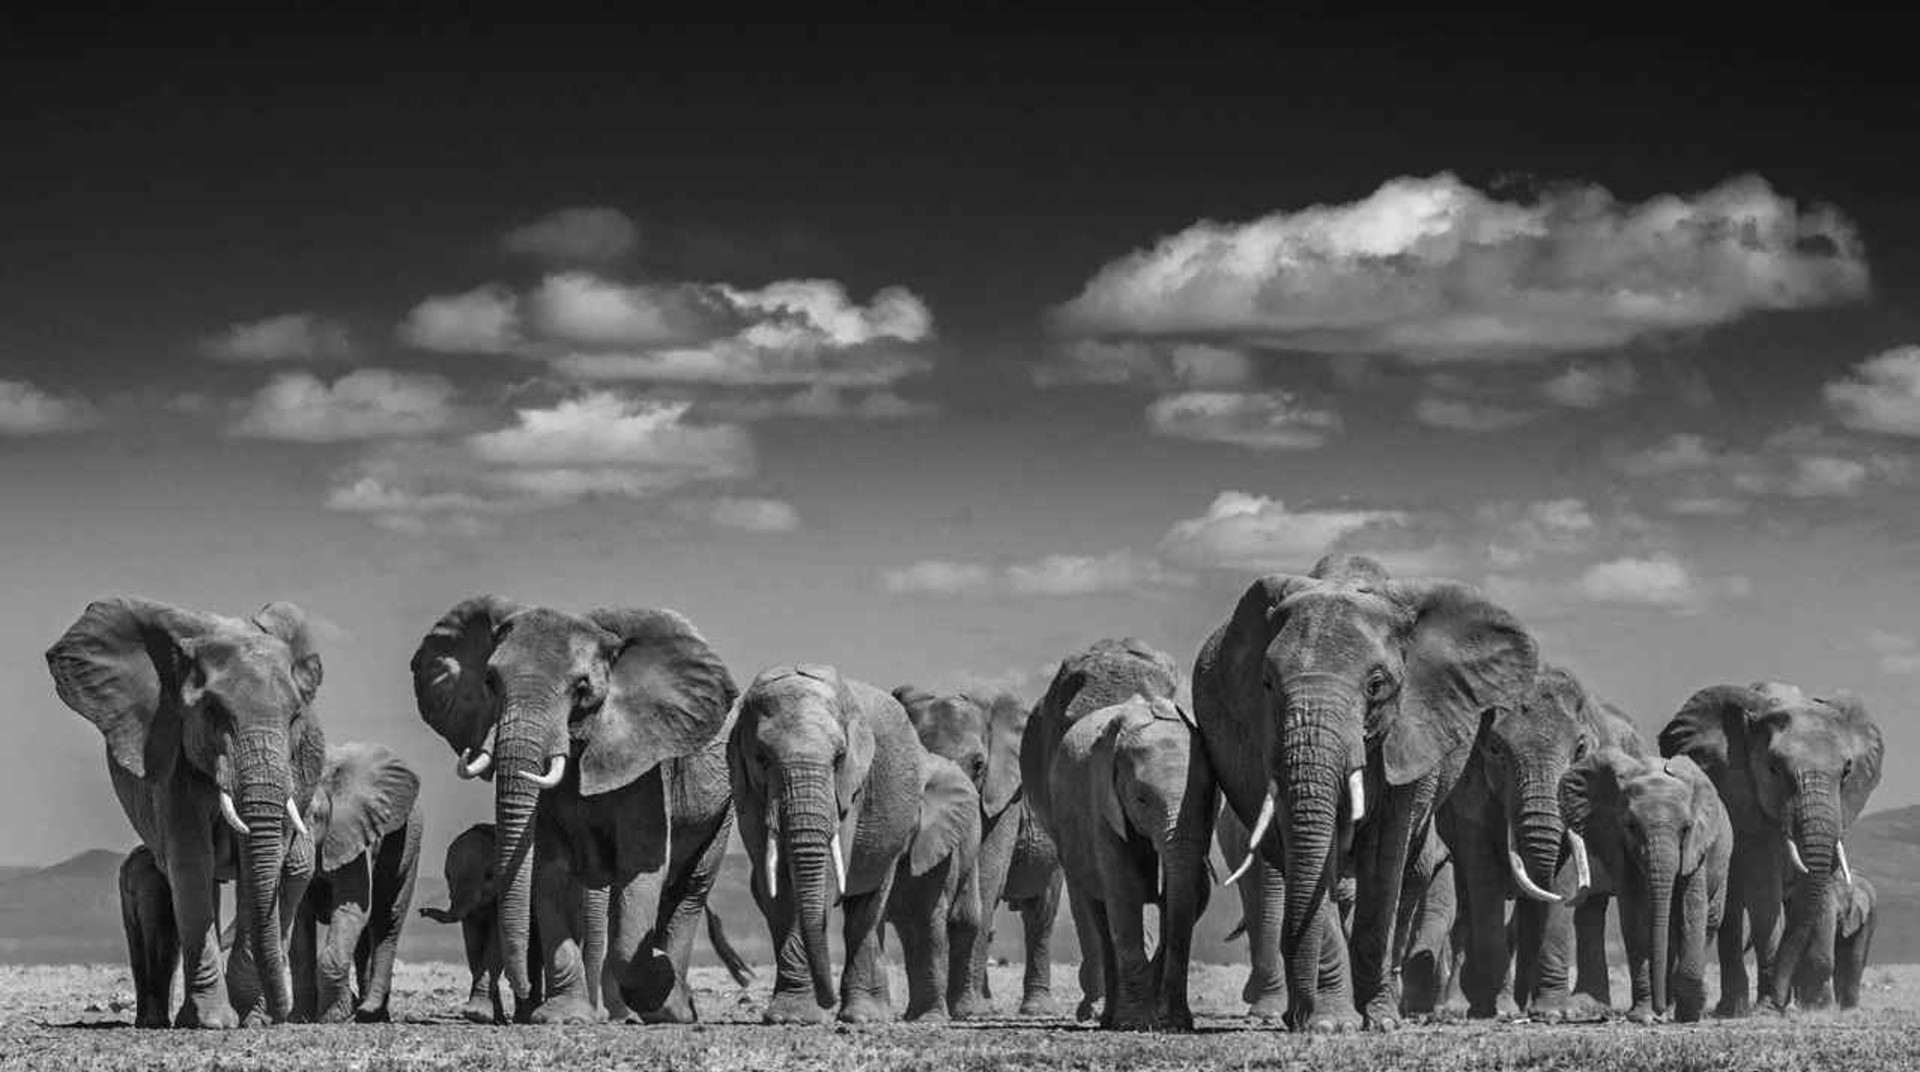 Elephant Uprising by David Yarrow